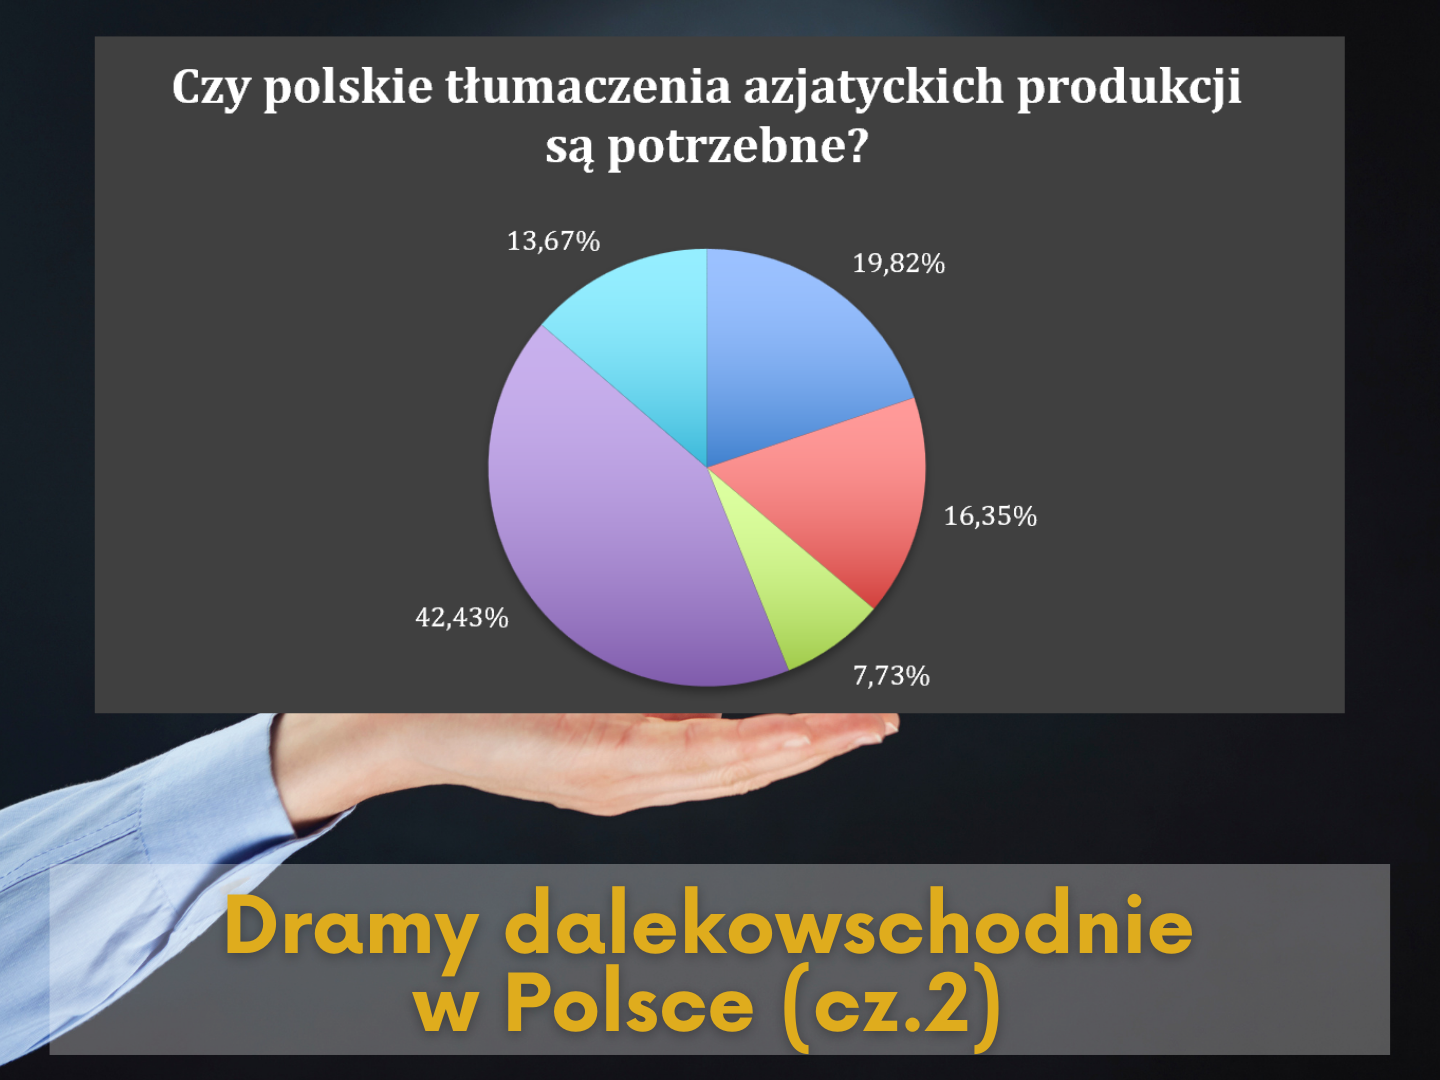 Dramy dalekowschodnie w Polsce – opracowanie wyników ankiety (2/2)